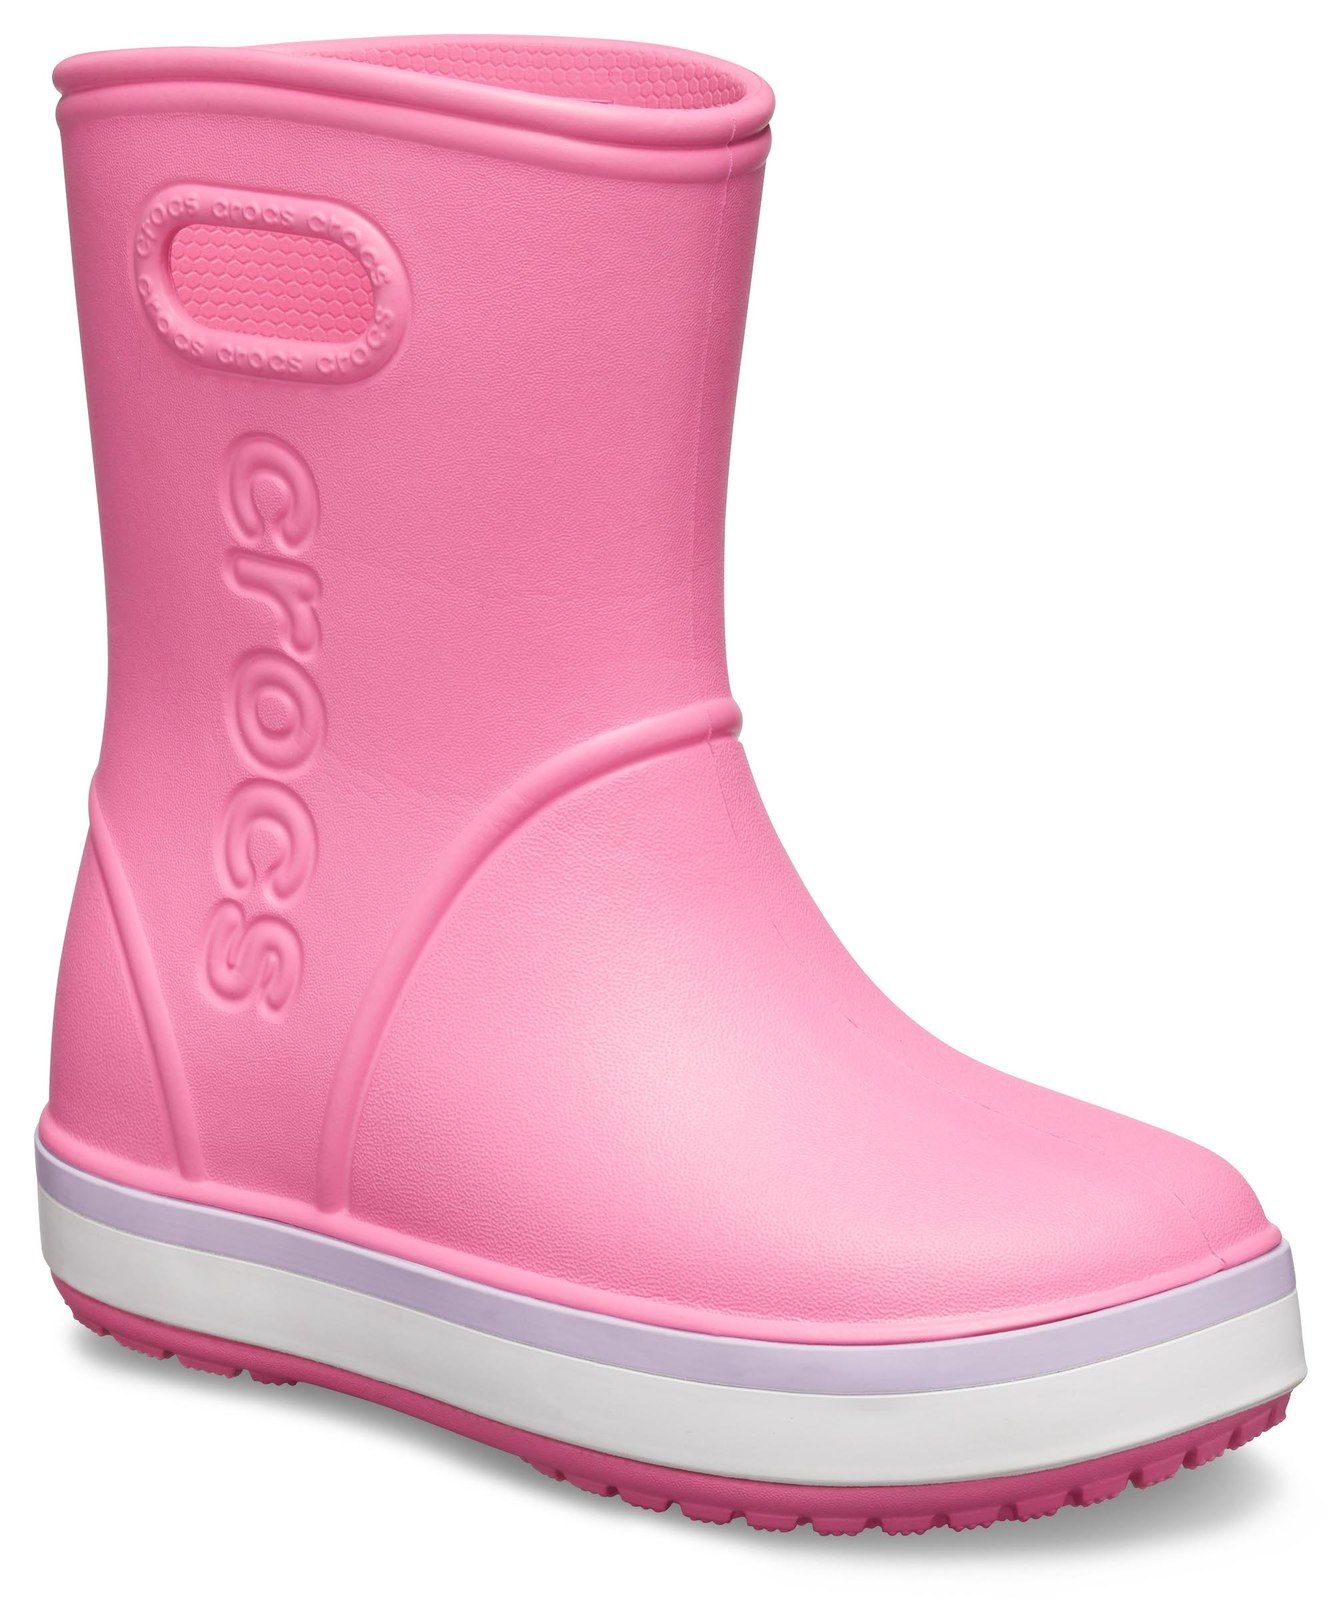 Crocs růžové dívčí holínky Crocband Rain Boot Pink Lemonade/Lavender